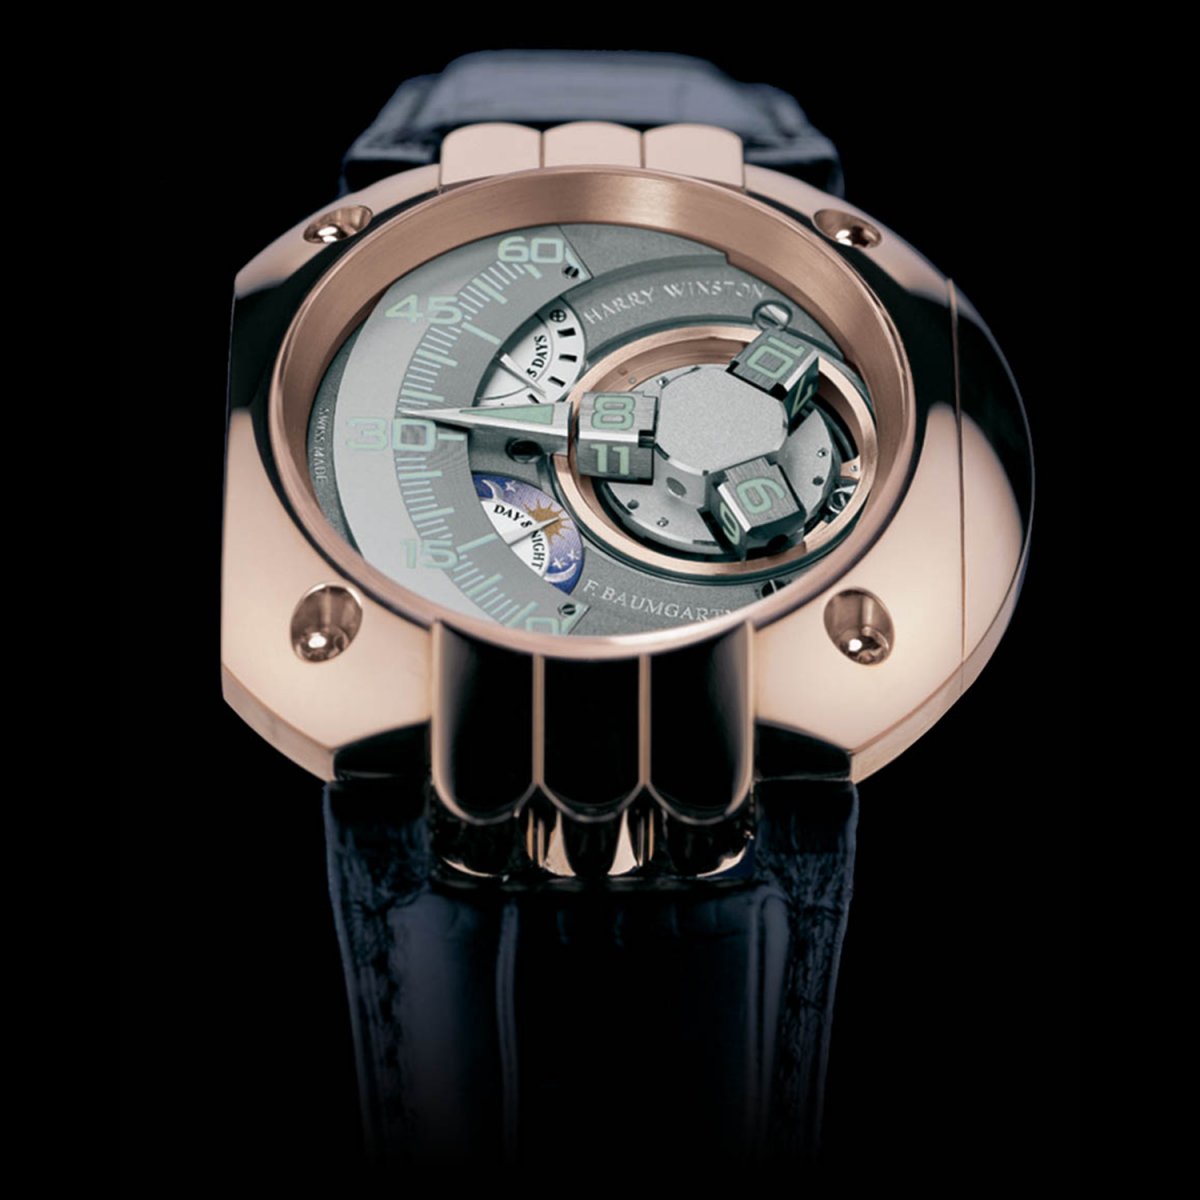 Swiss timepieces satellite watch Opus 5